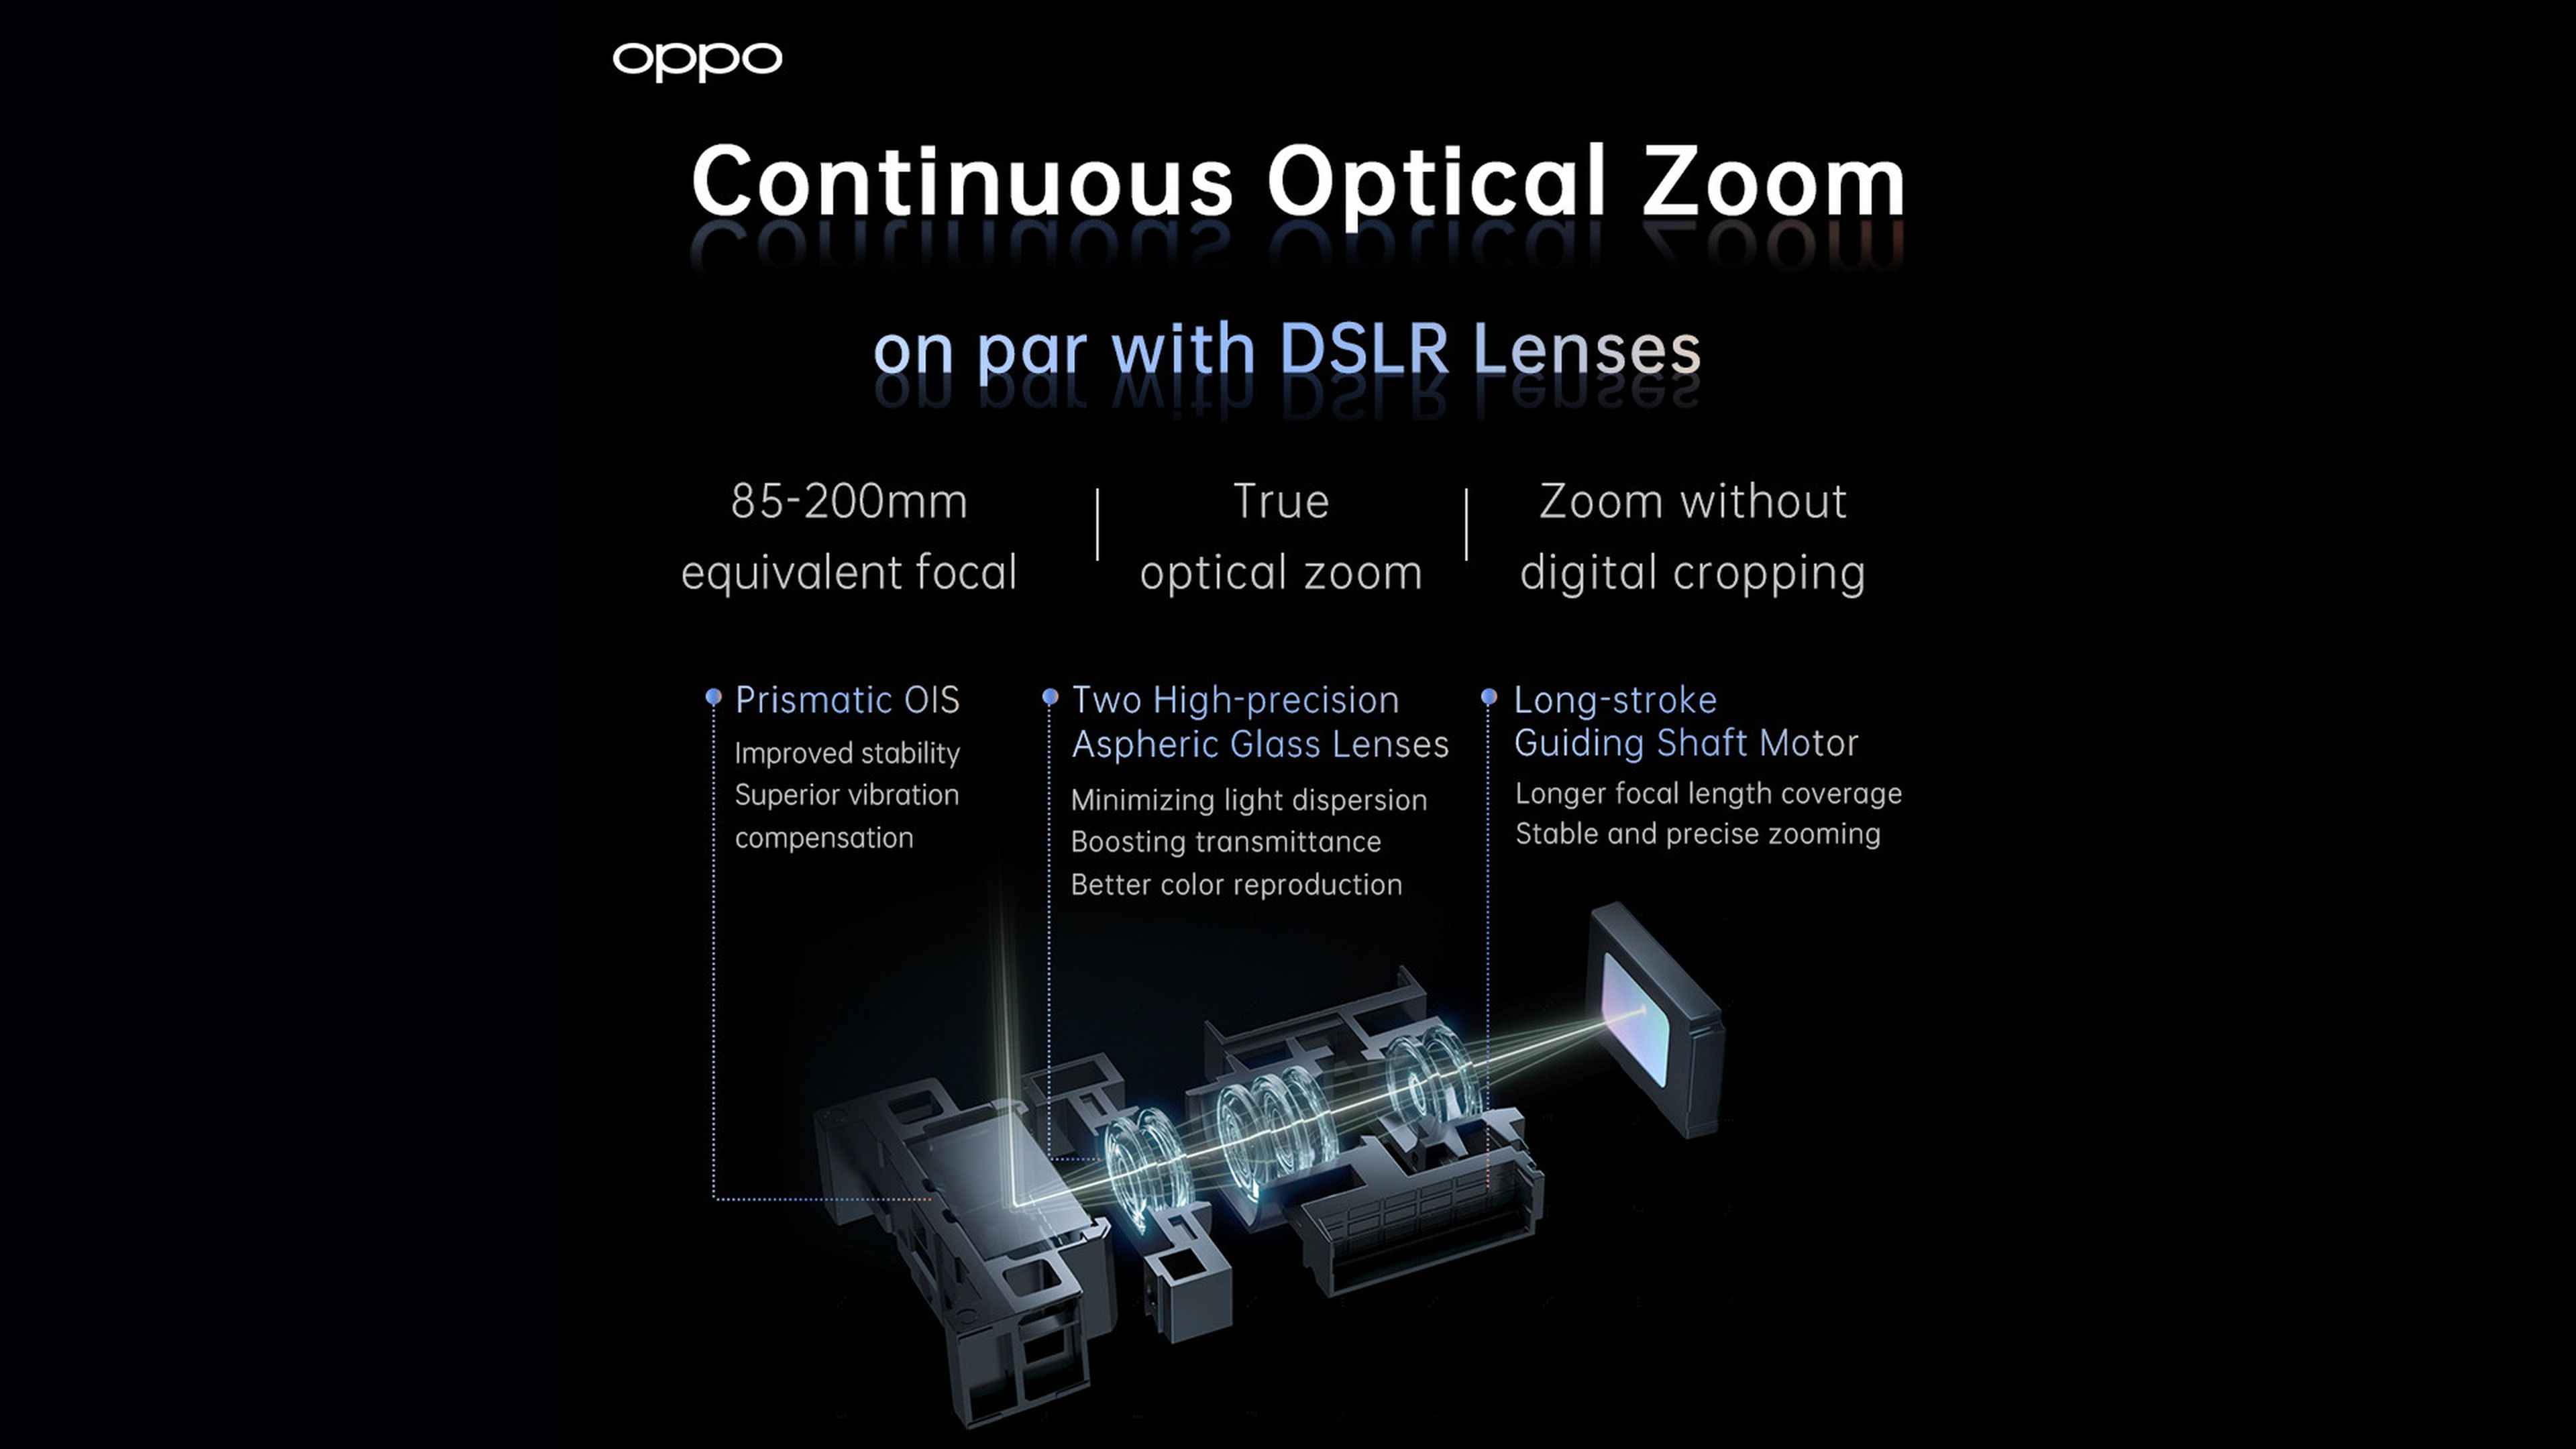 Zoom óptico continuo, AI mejorada y sensores RGBW son las novedades que Oppo prepara para sus móviles